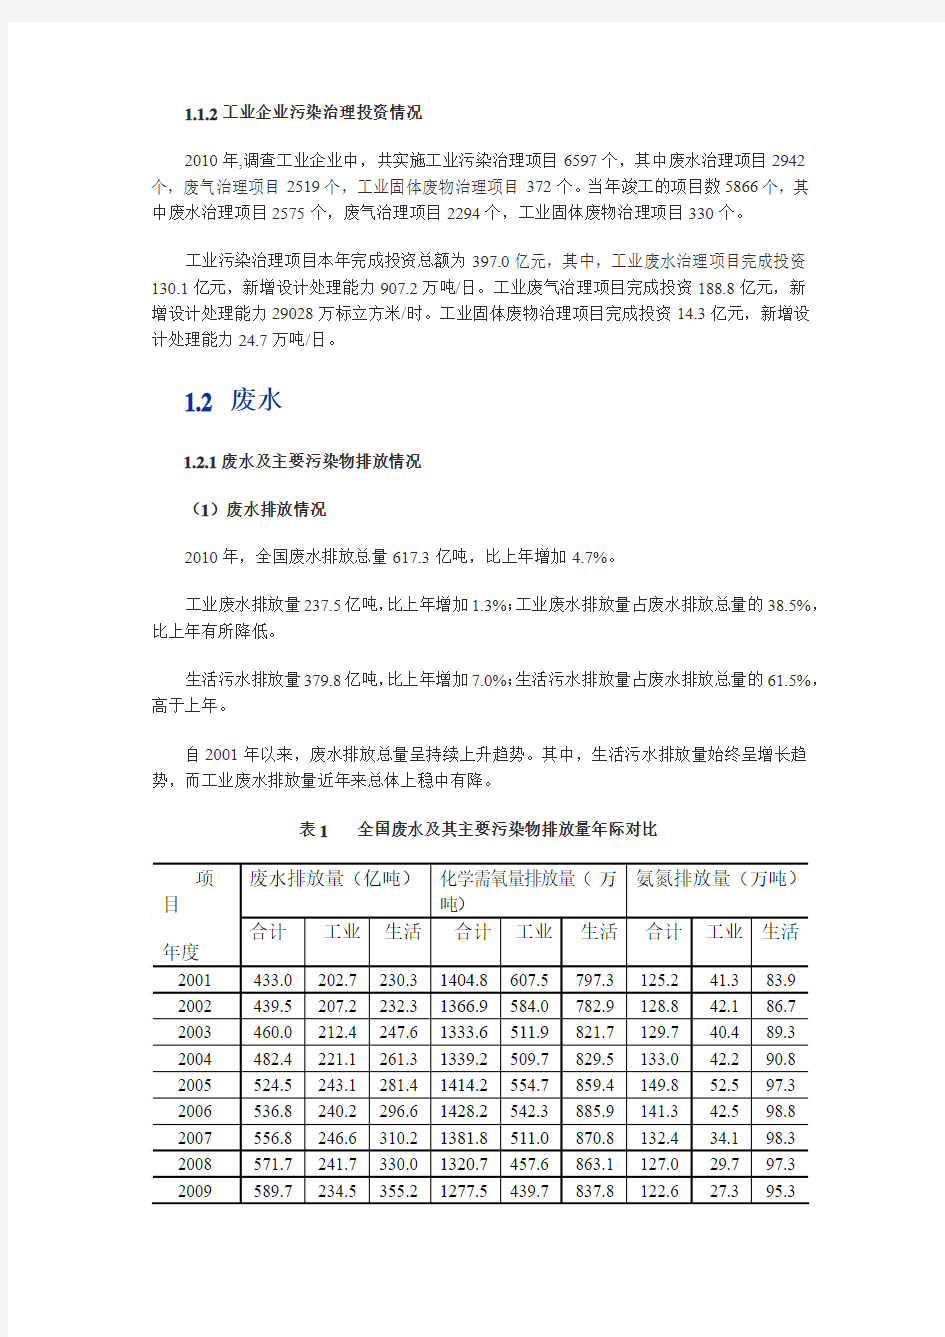 2011年中国环境统计年报